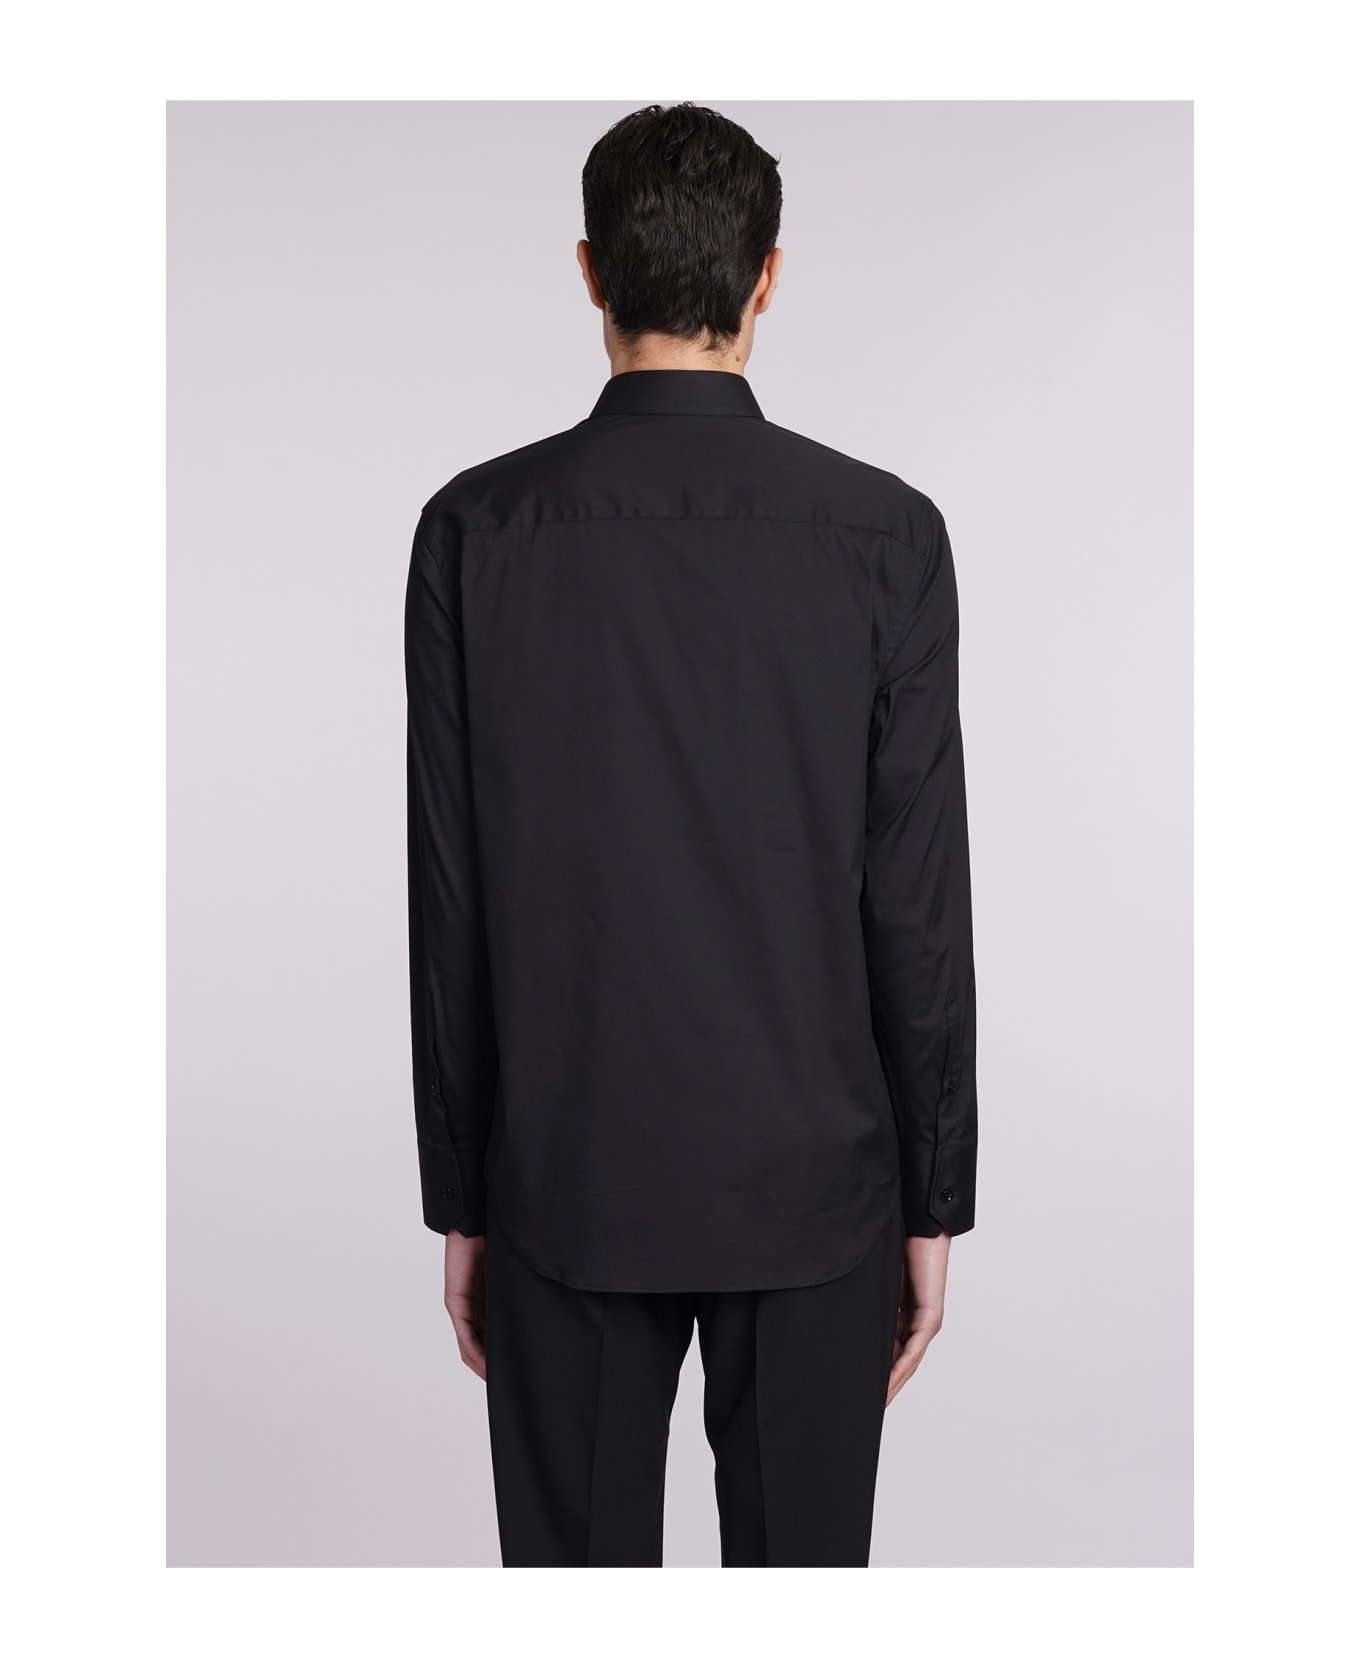 Emporio Armani Shirt In Black Cotton - black シャツ